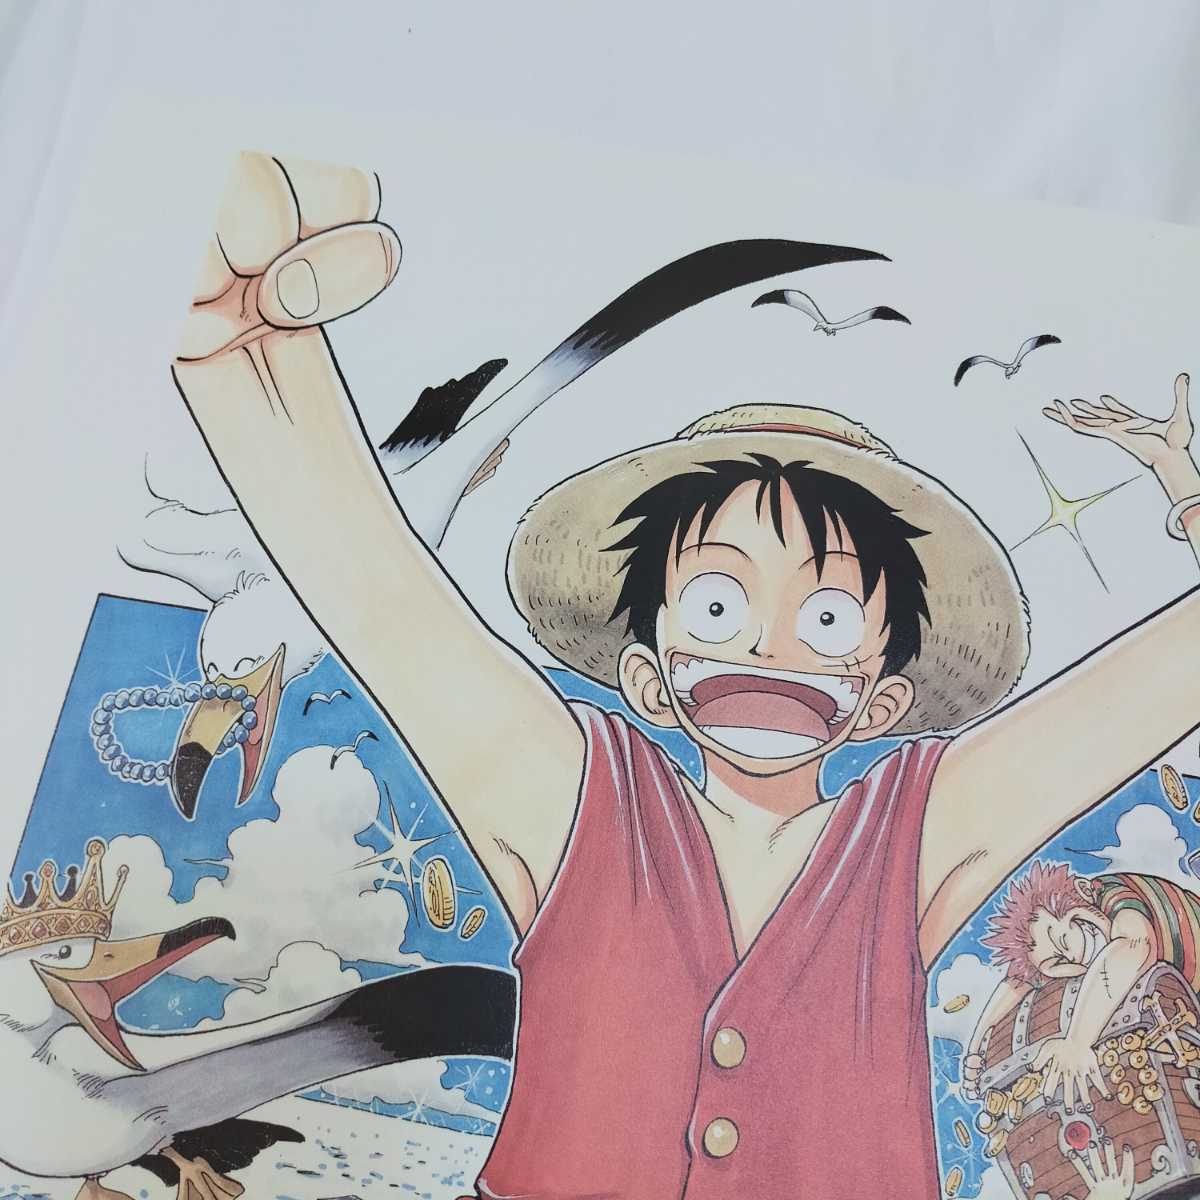 One Piece 複製原稿 第1話 ワンピース カラー 2枚セット シャンクス ルフィ 赤髪海賊団 One Piece 売買されたオークション情報 Yahooの商品情報をアーカイブ公開 オークファン Aucfan Com